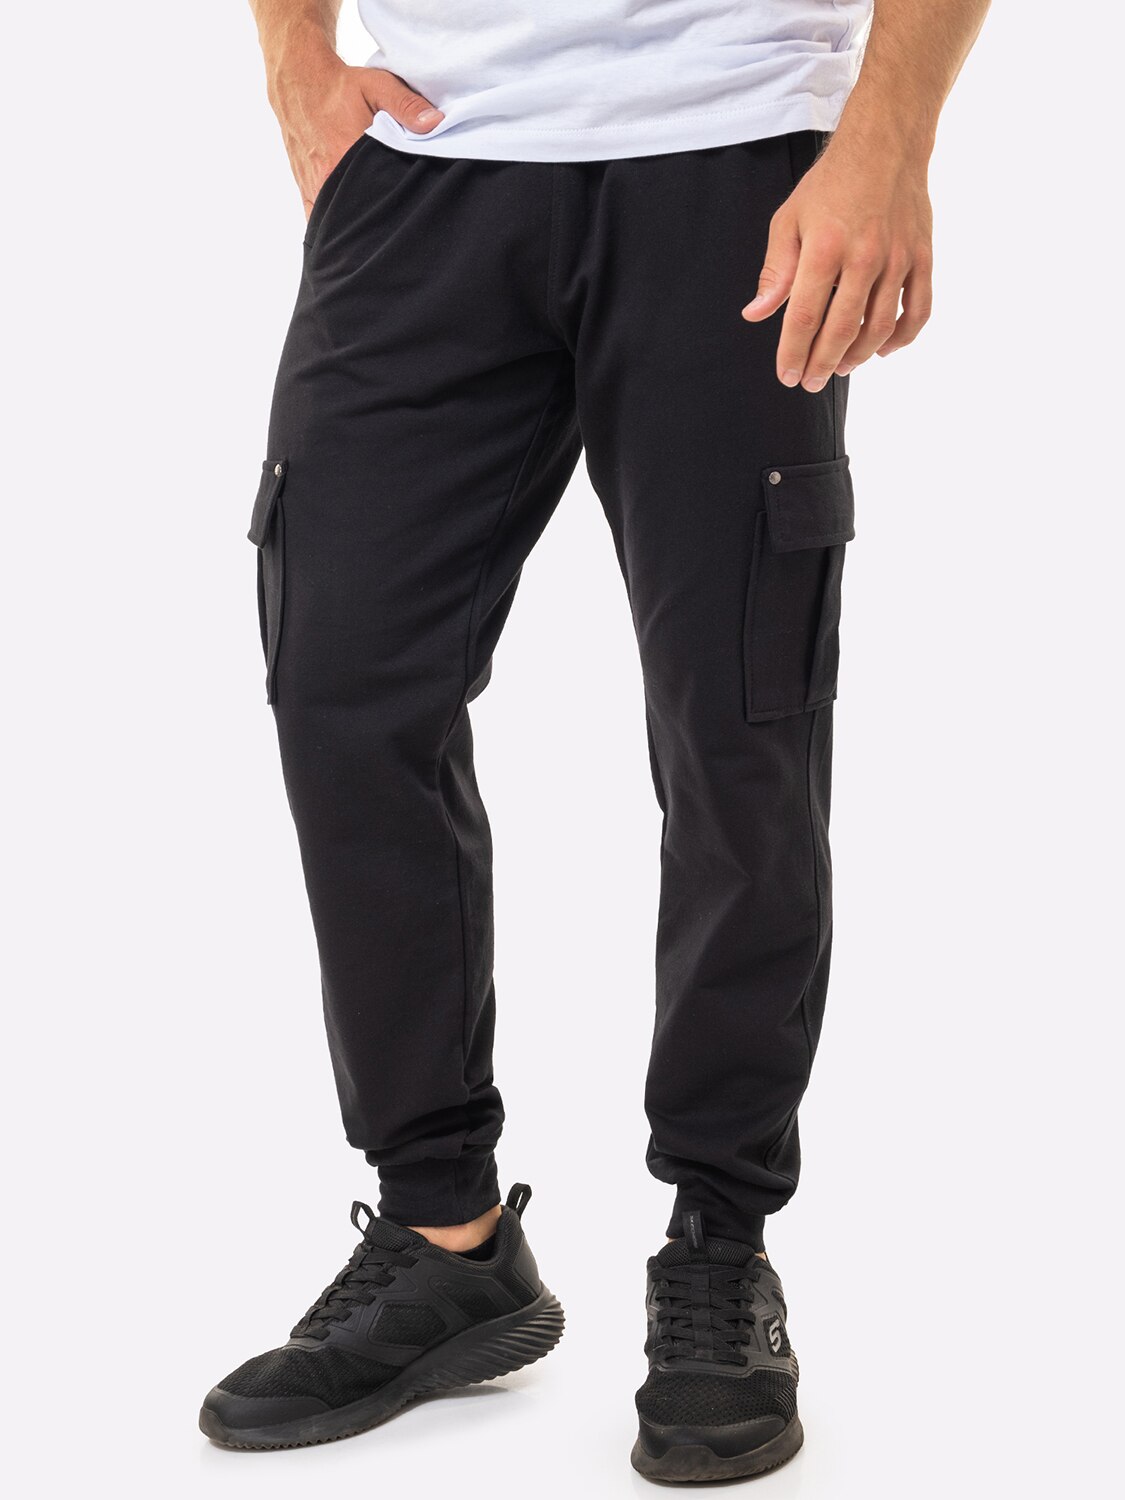 Спортивные брюки мужские HappyFox 9117 черные 48 RU - отзывы покупателей наМегамаркет